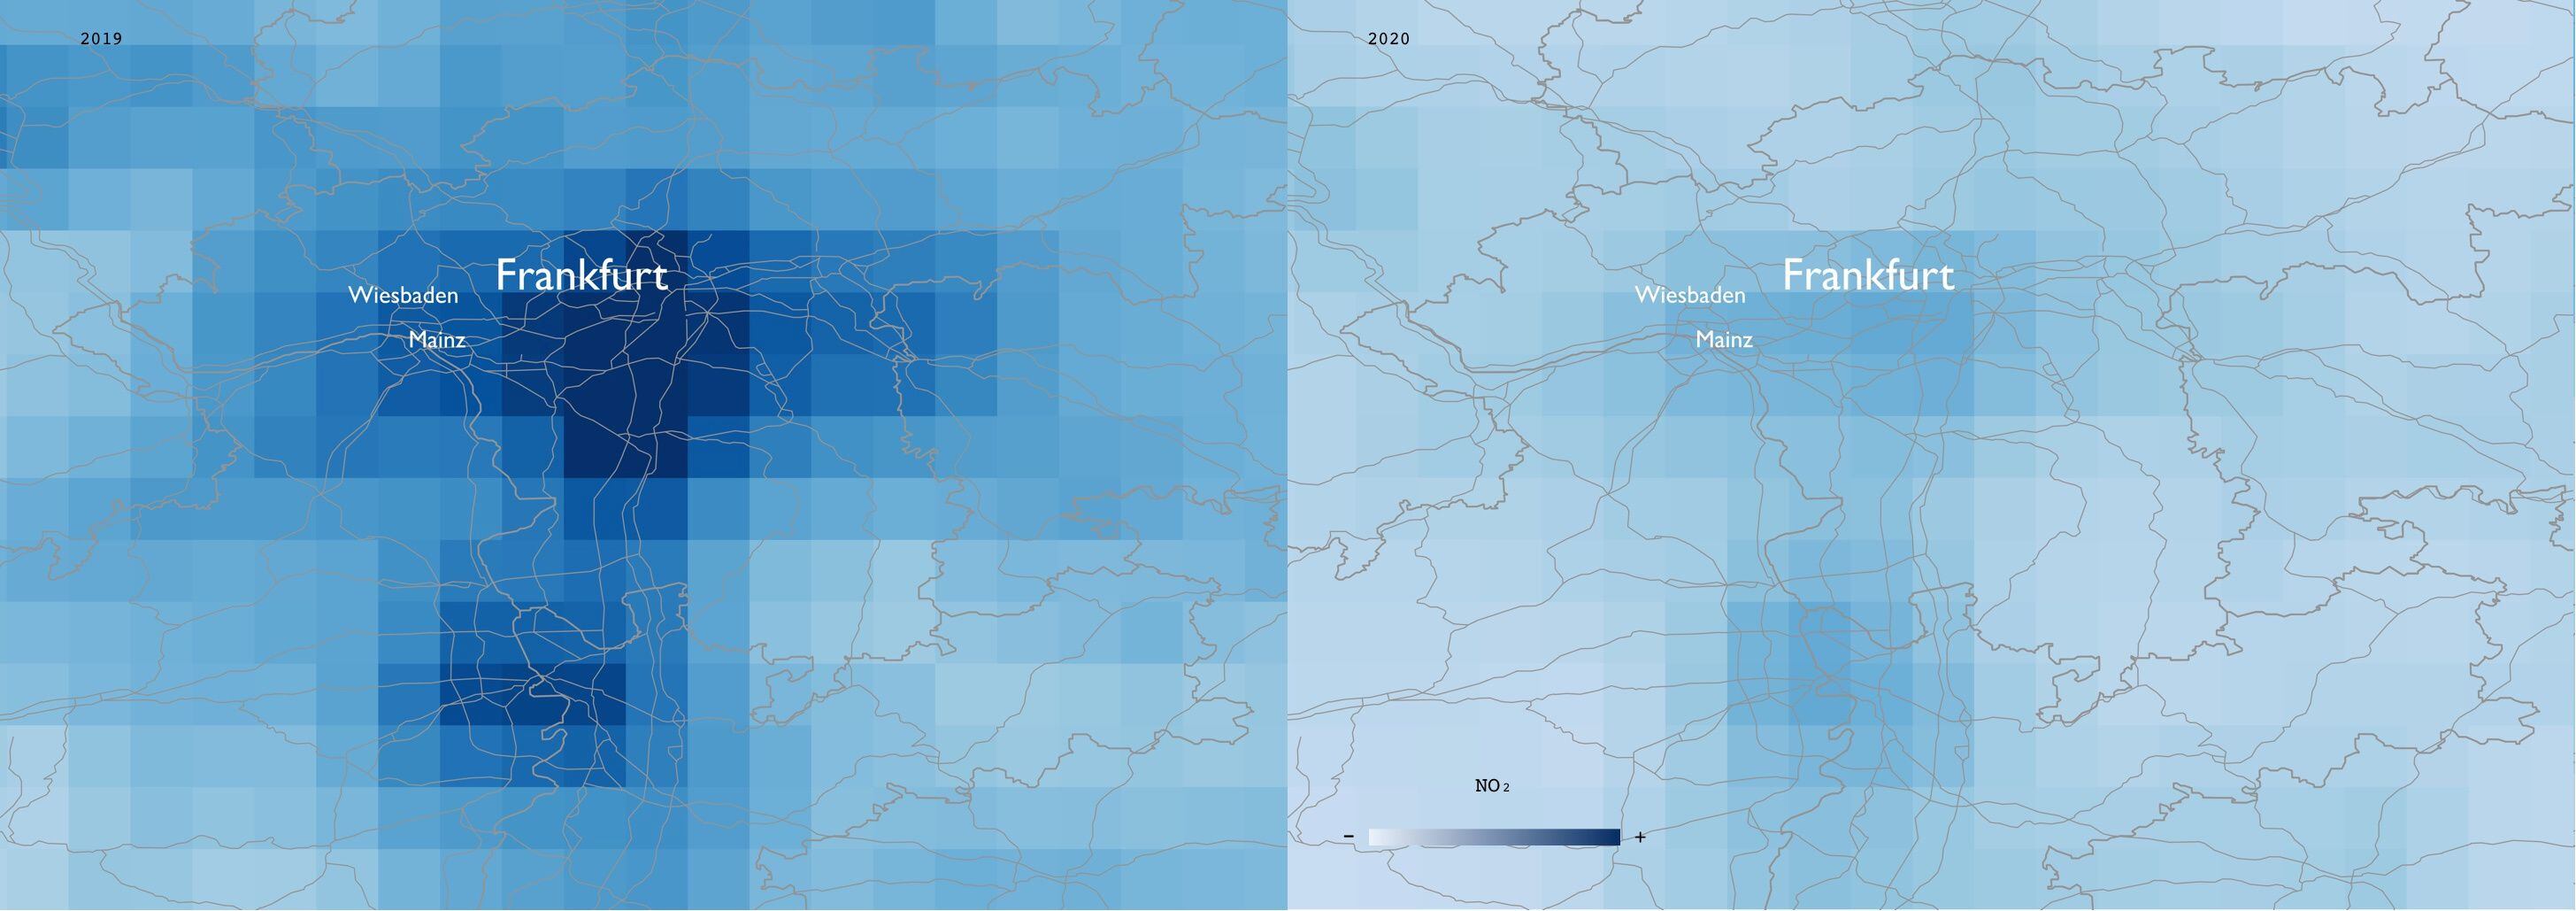 Mapa que muestra en azul la mayor contaminación ambiental en la zona de Frankfurt, Alemania, comparado a otro día donde no hay actividad industrial - ESA/EPHA/James Poetzscher/Handout via REUTERS 